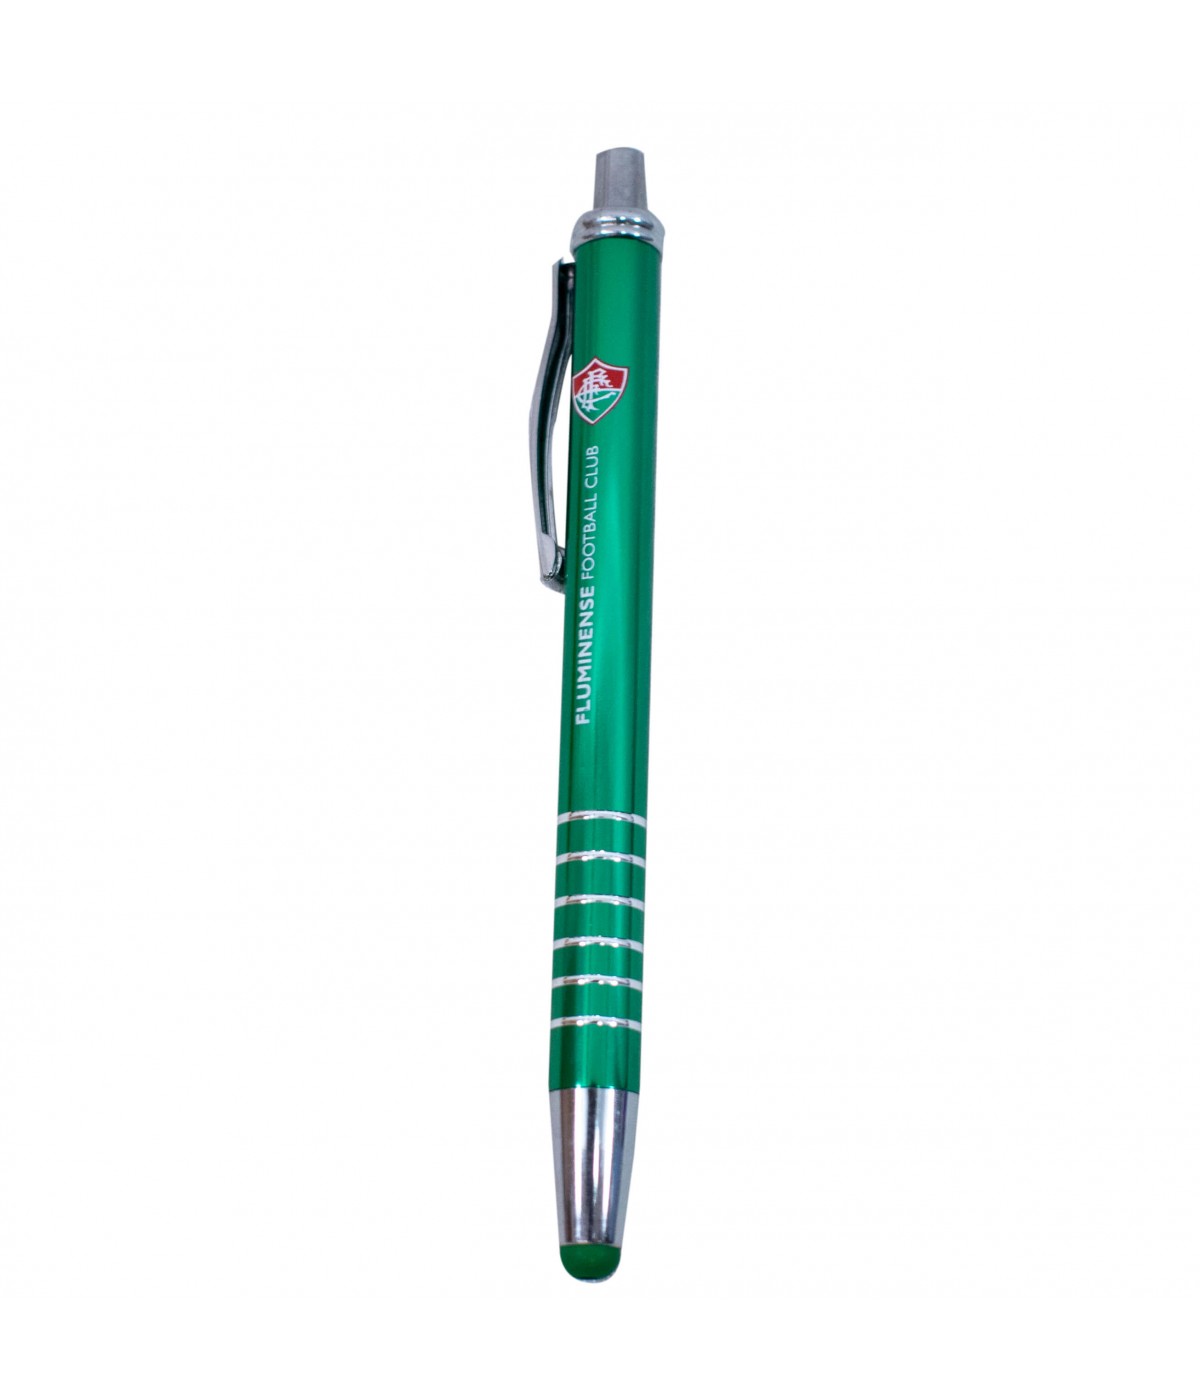 Caneta Roller Pen Touchscreen - Fluminense